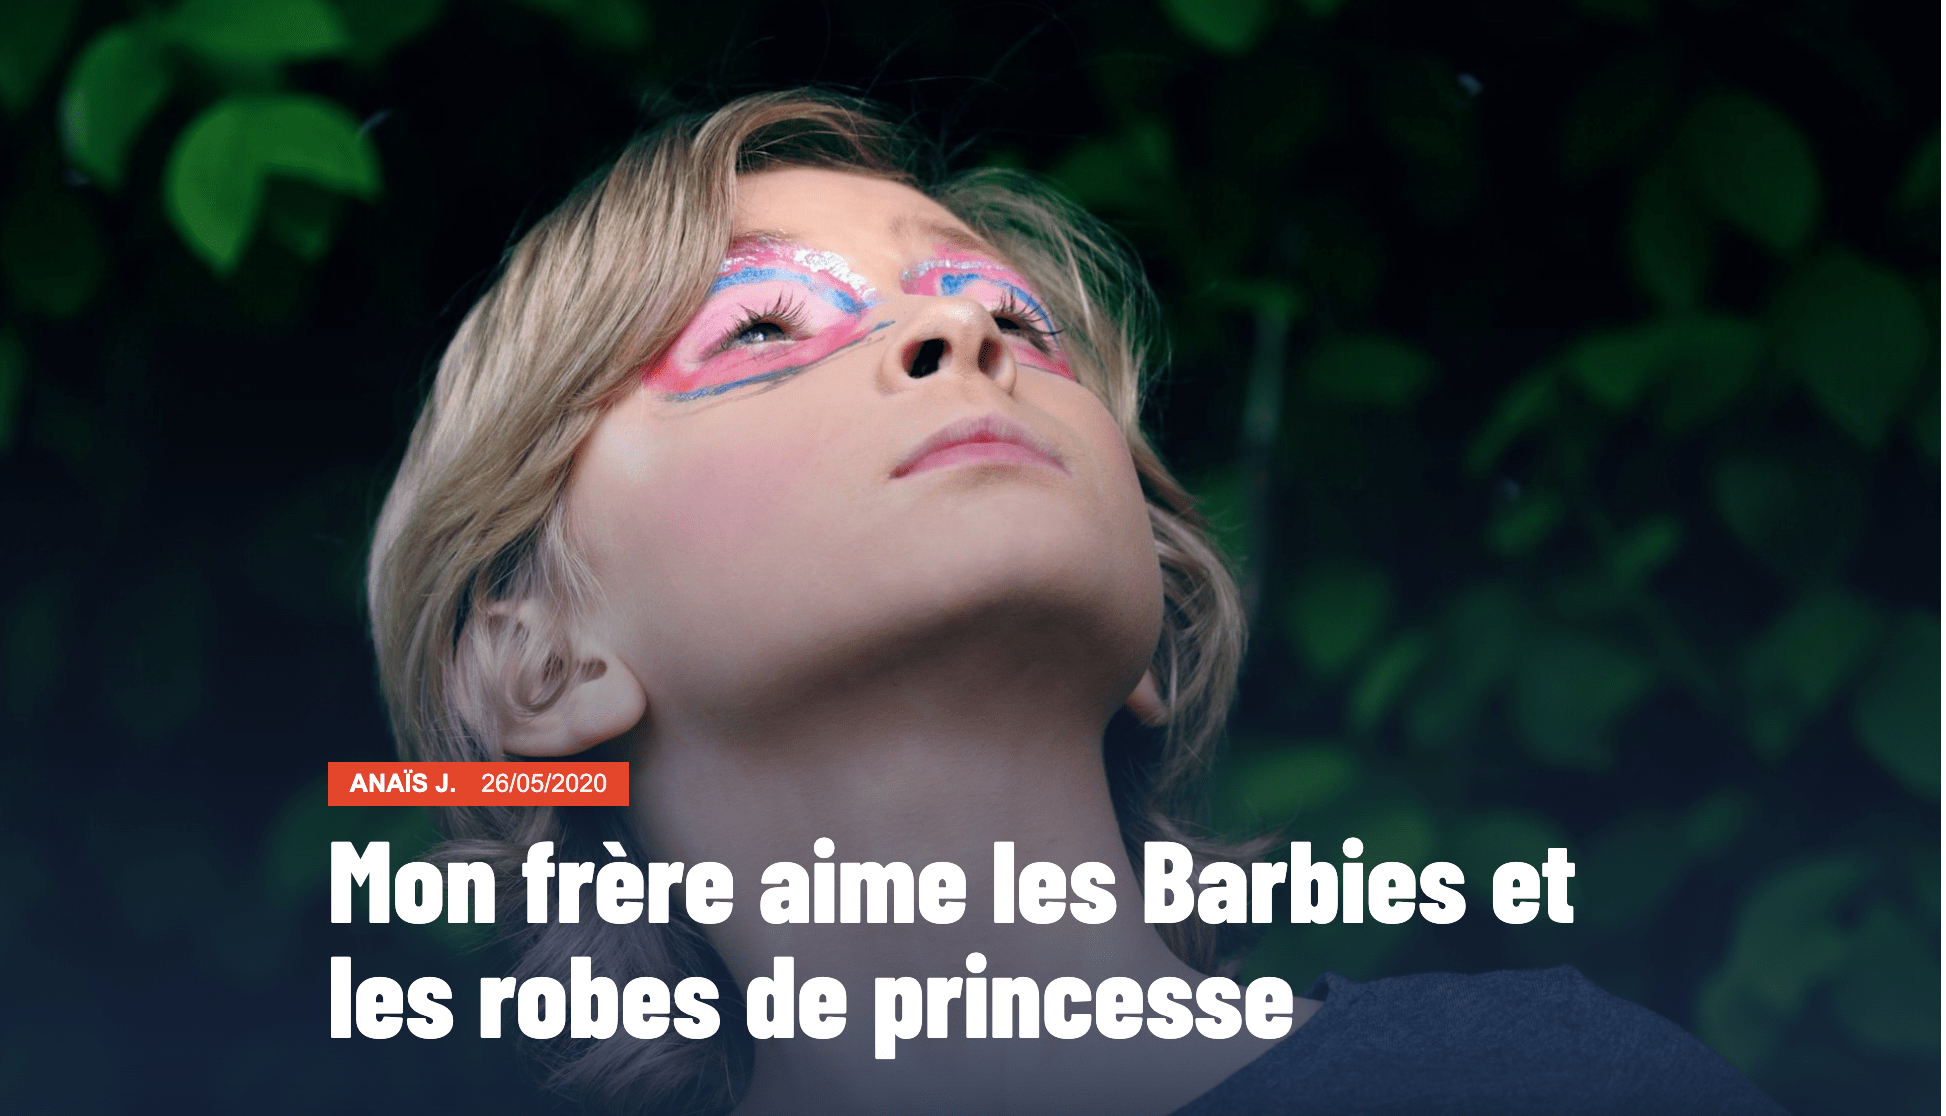 Miniature de l'article "Mon frère aime les Barbies et les robes de princesse". L'image représente un enfant, regard vers le ciel. Le contour de ses yeux est maquillé en rose et bleu. 